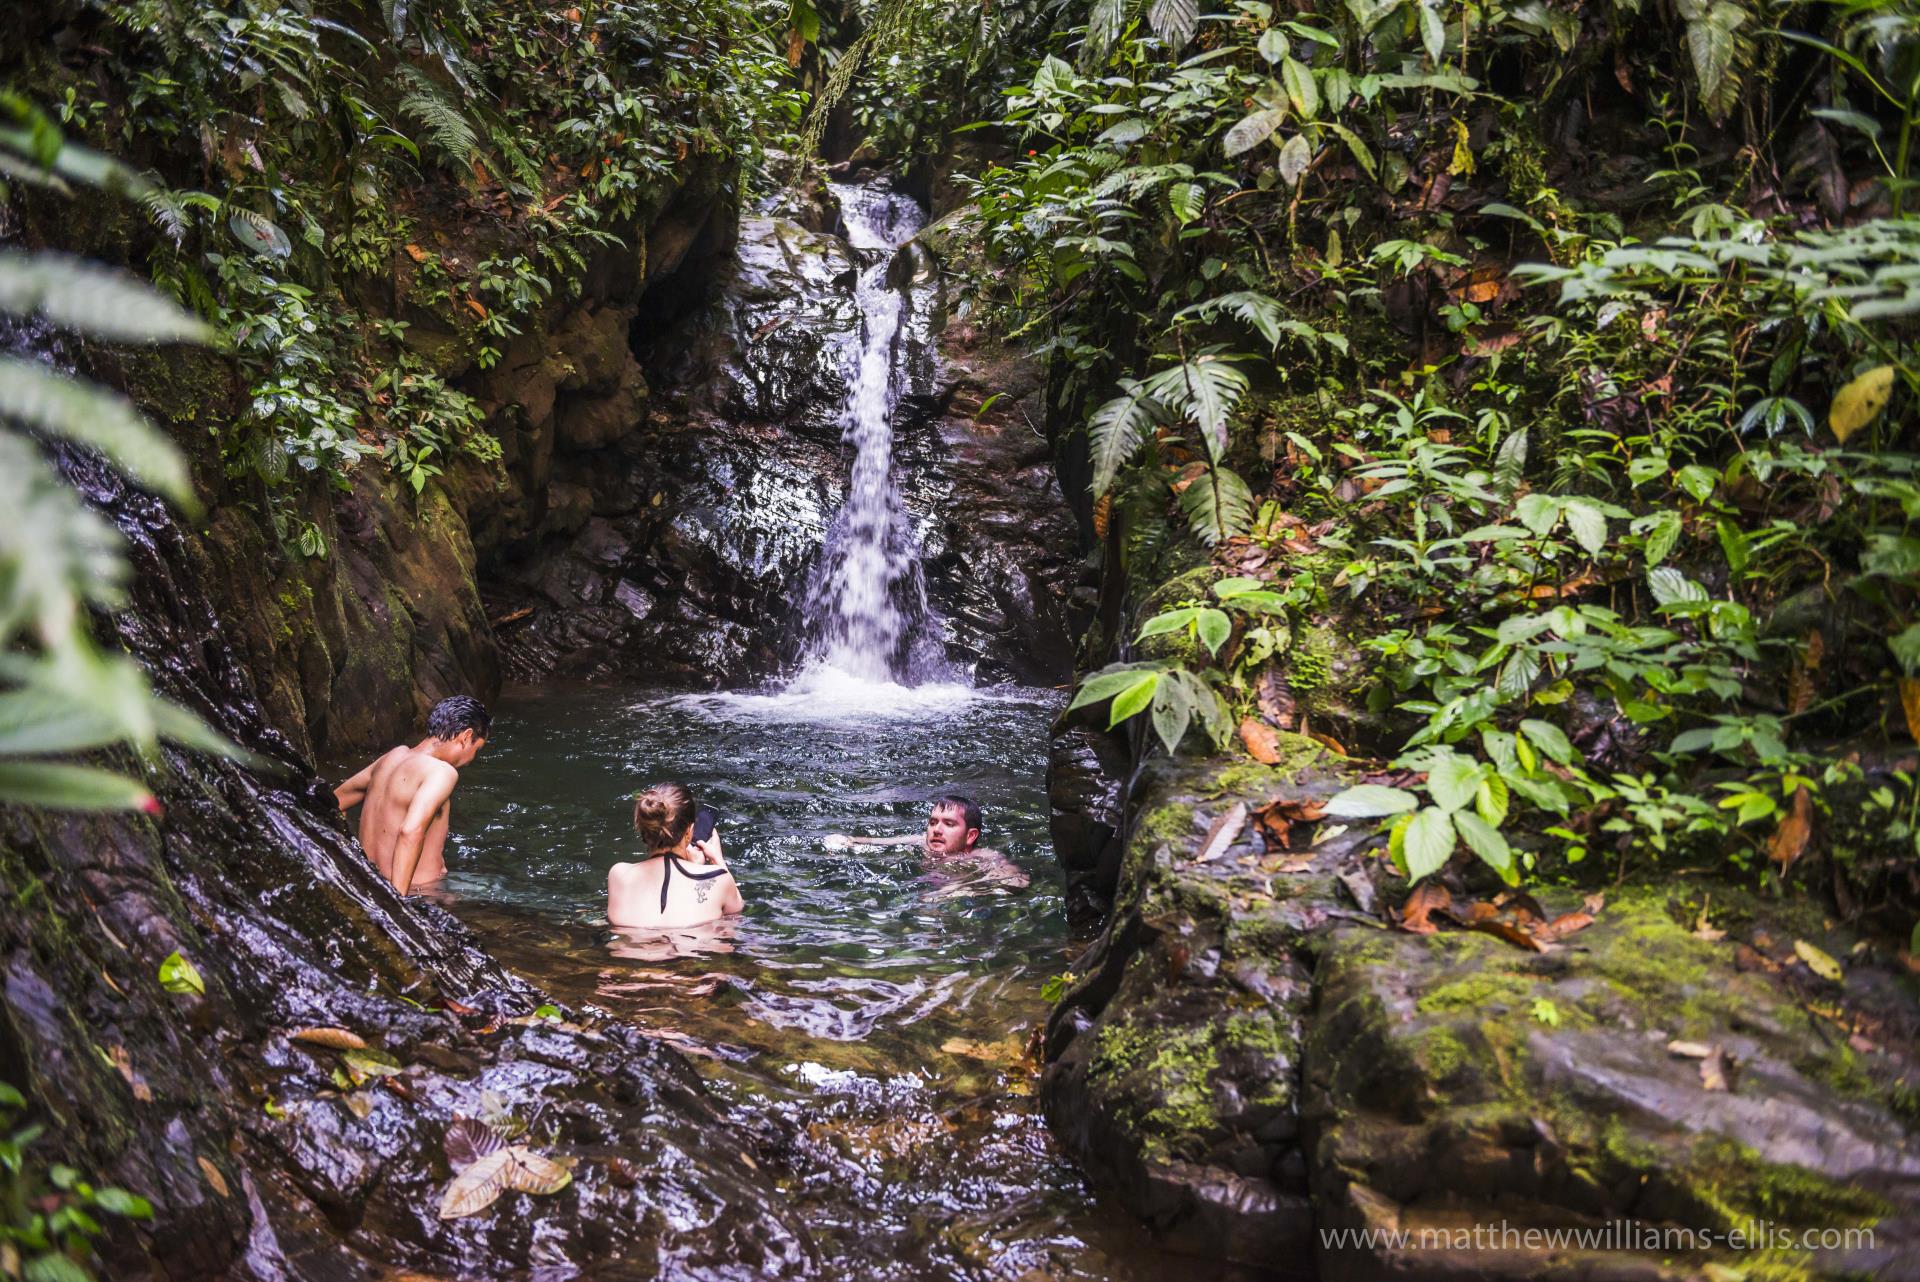 Waterfall at Mashpi - Natural Wonders of Ecuador 